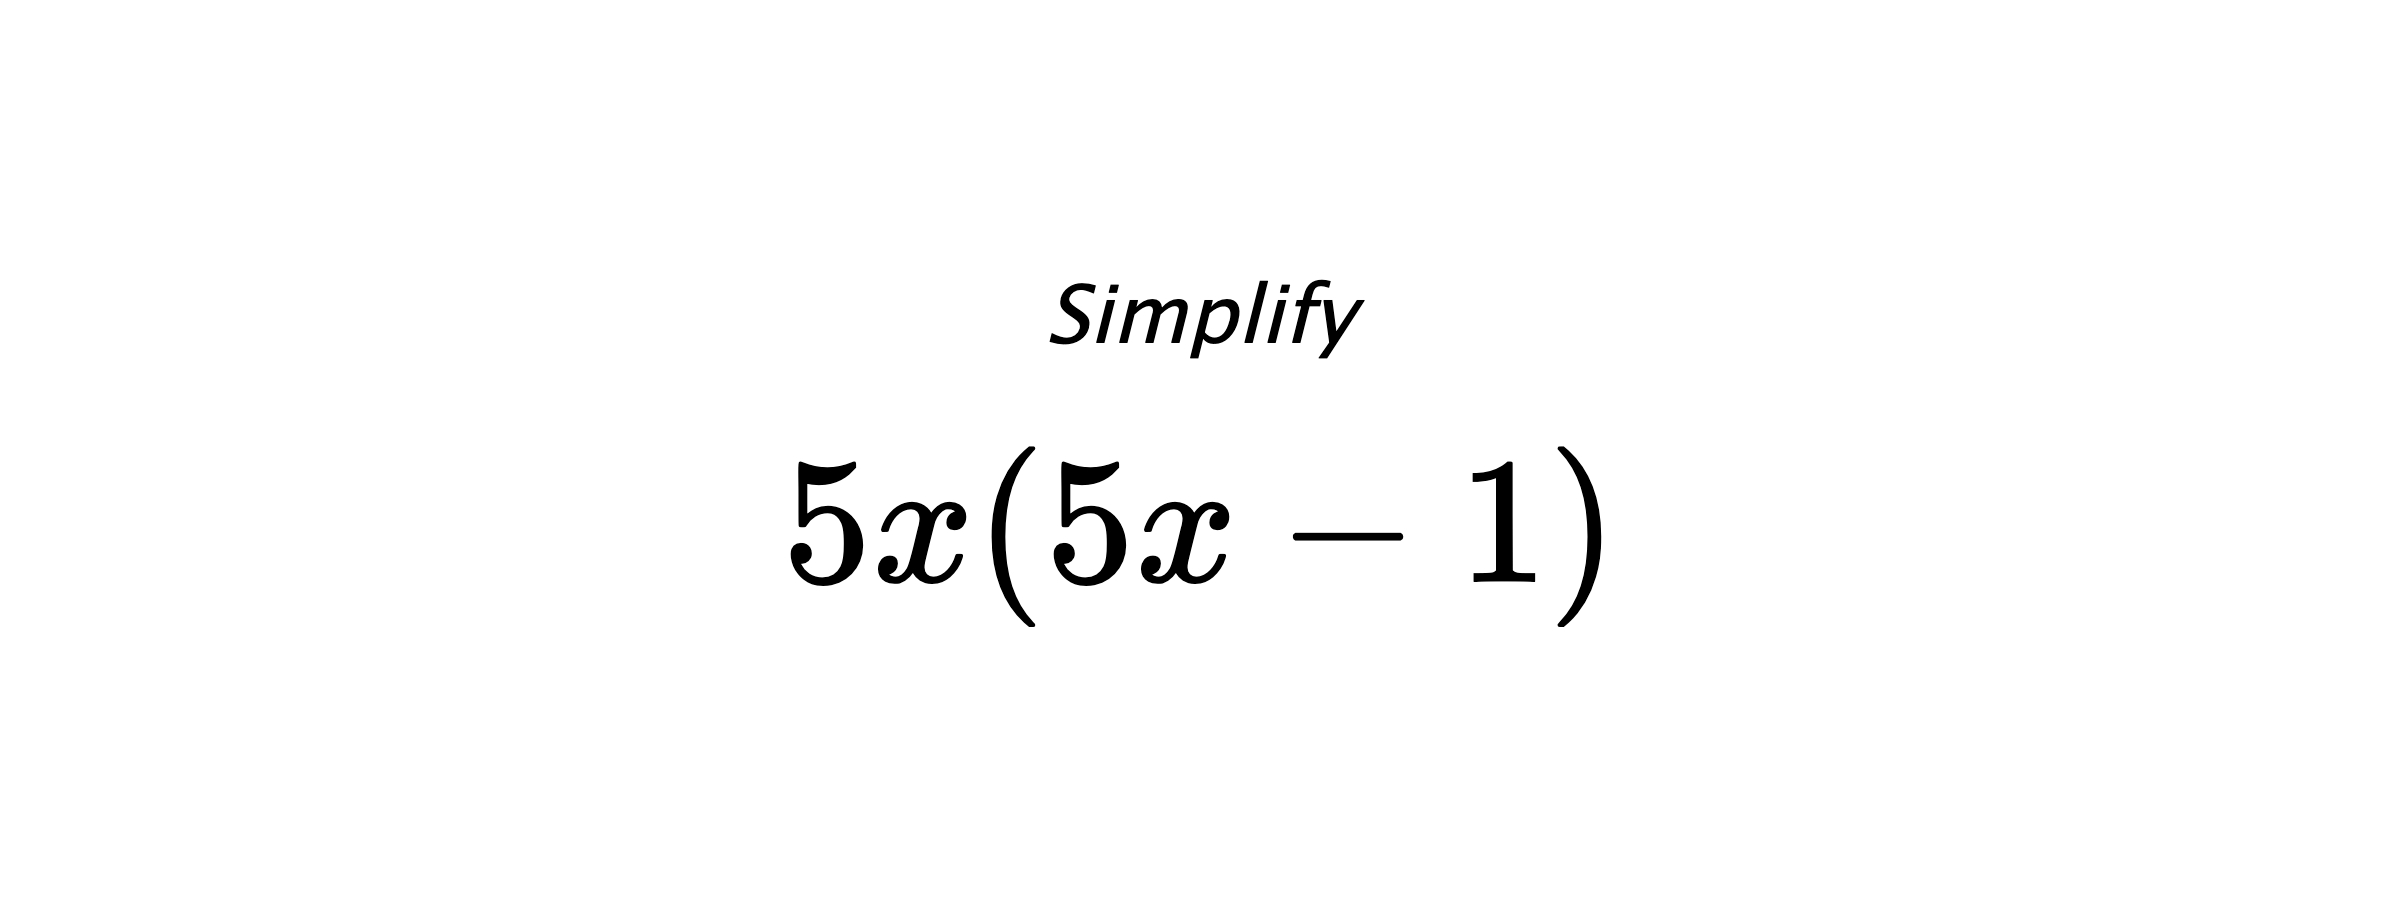 Simplify $ 5x(5x-1) $